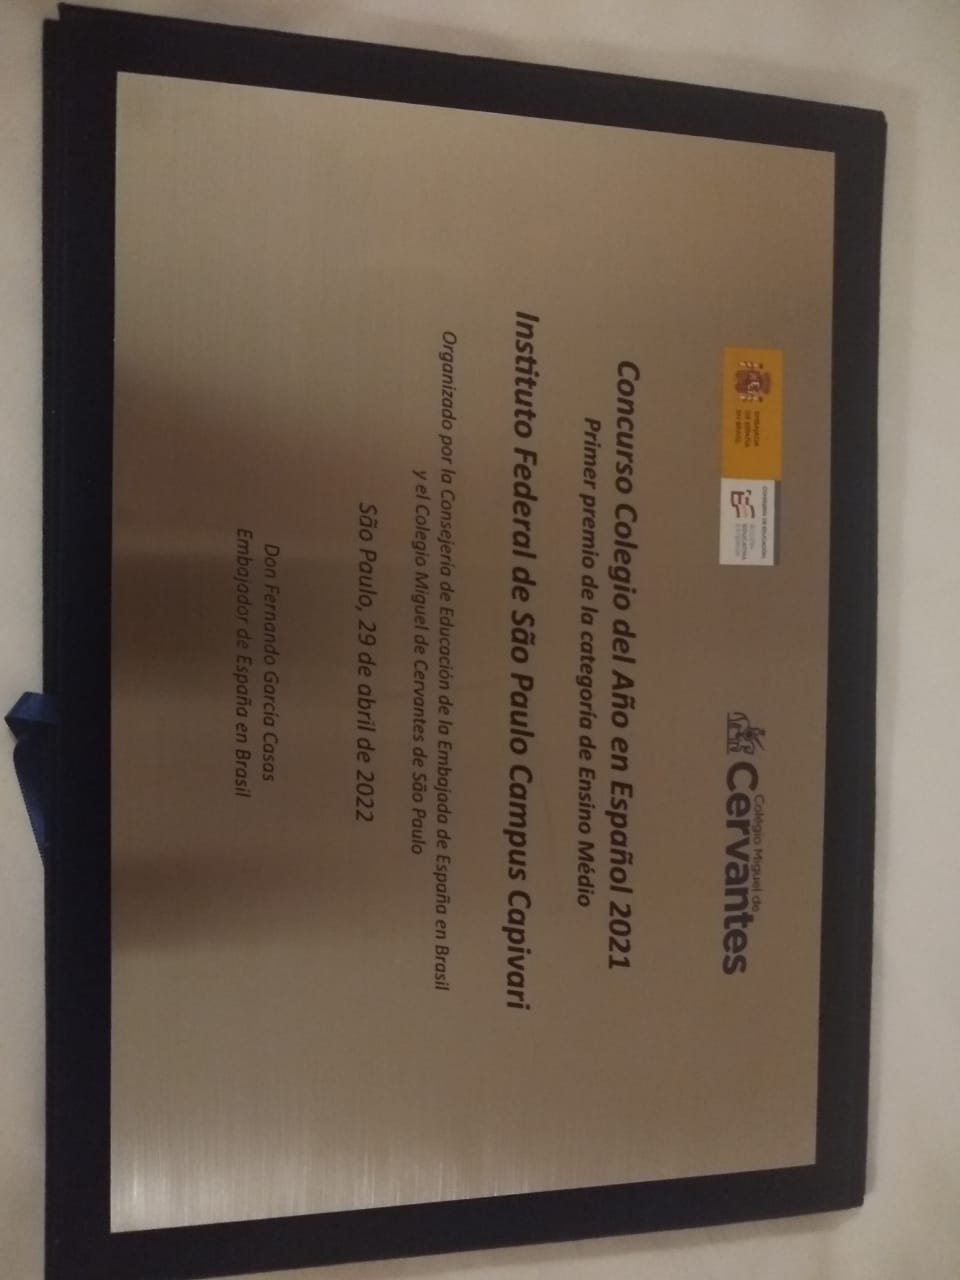 placa da premiação "Colegio del año"